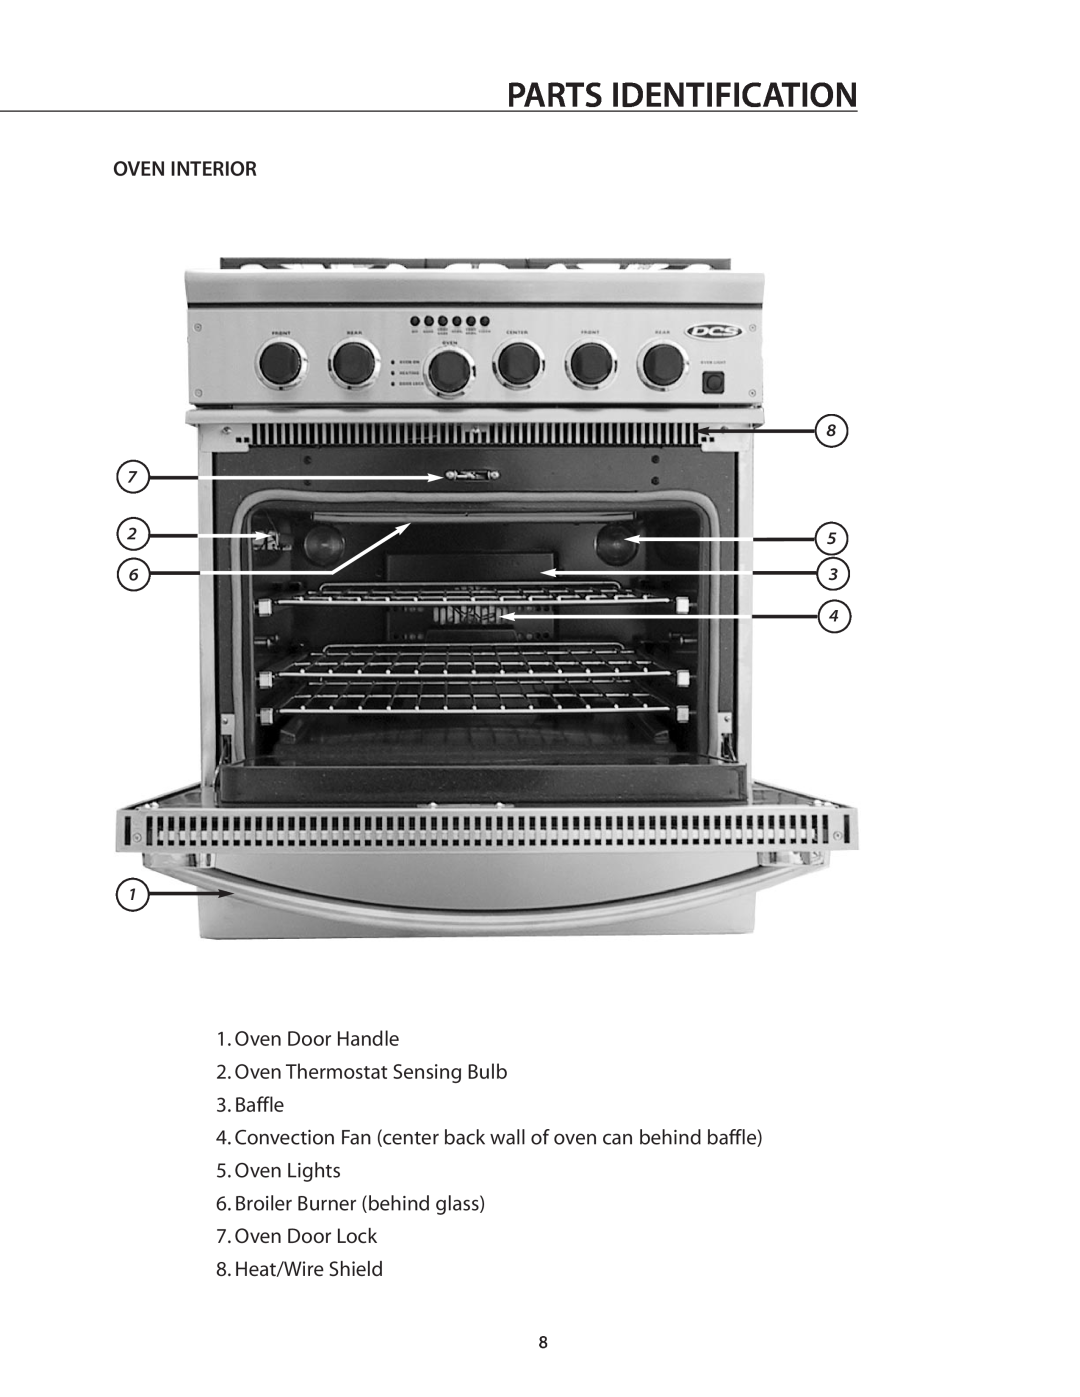 DCS RGSC-305BK Oven Interior, Oven Door Handle 2.Oven Thermostat Sensing Bulb, Baffle, Oven Door Lock 8.Heat/Wire Shield 